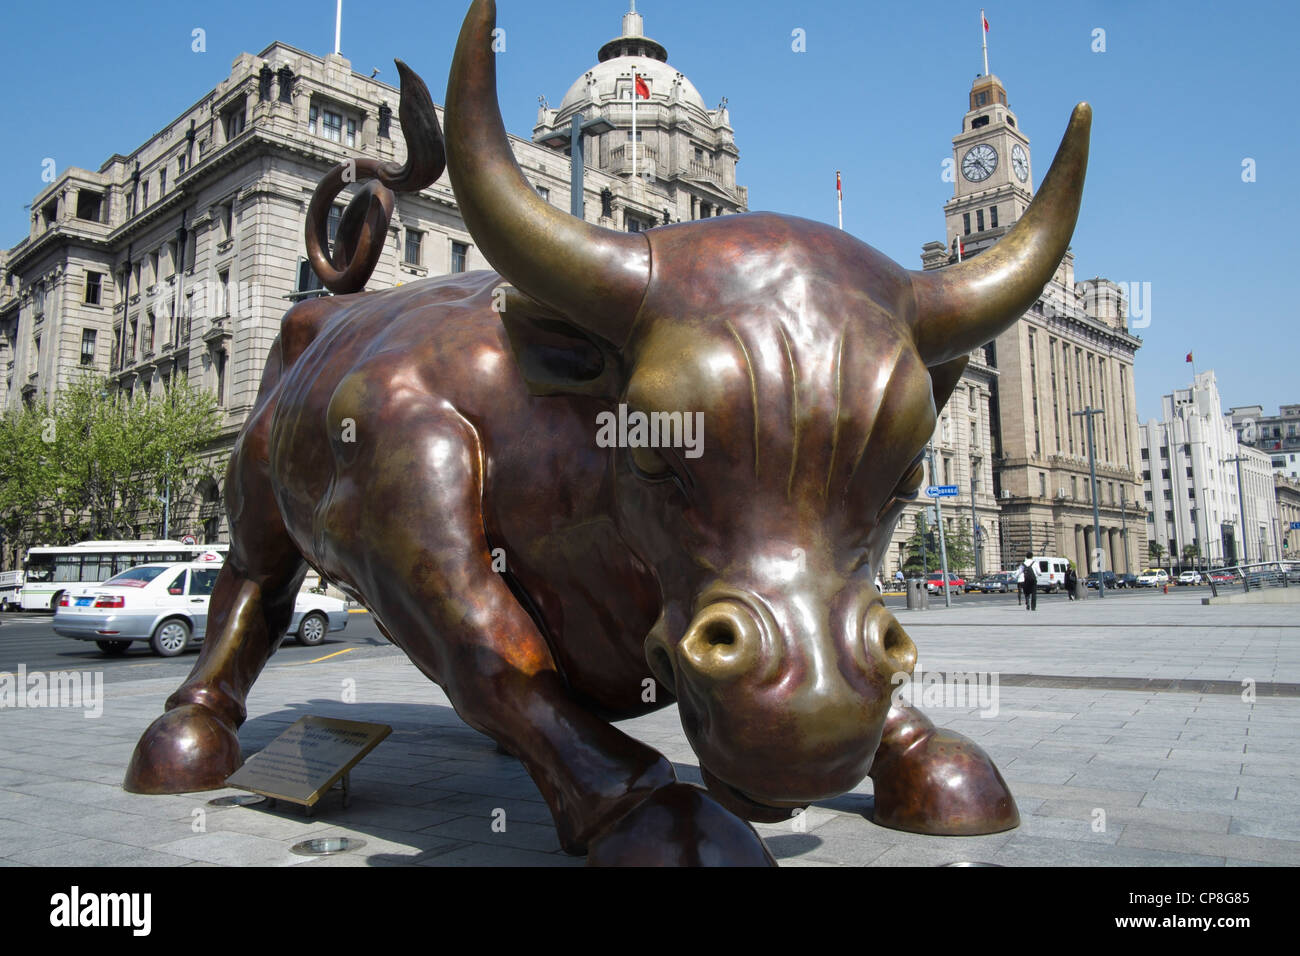 Sculpture en bronze de Bull sur le Bund de Shanghai Chine Banque D'Images